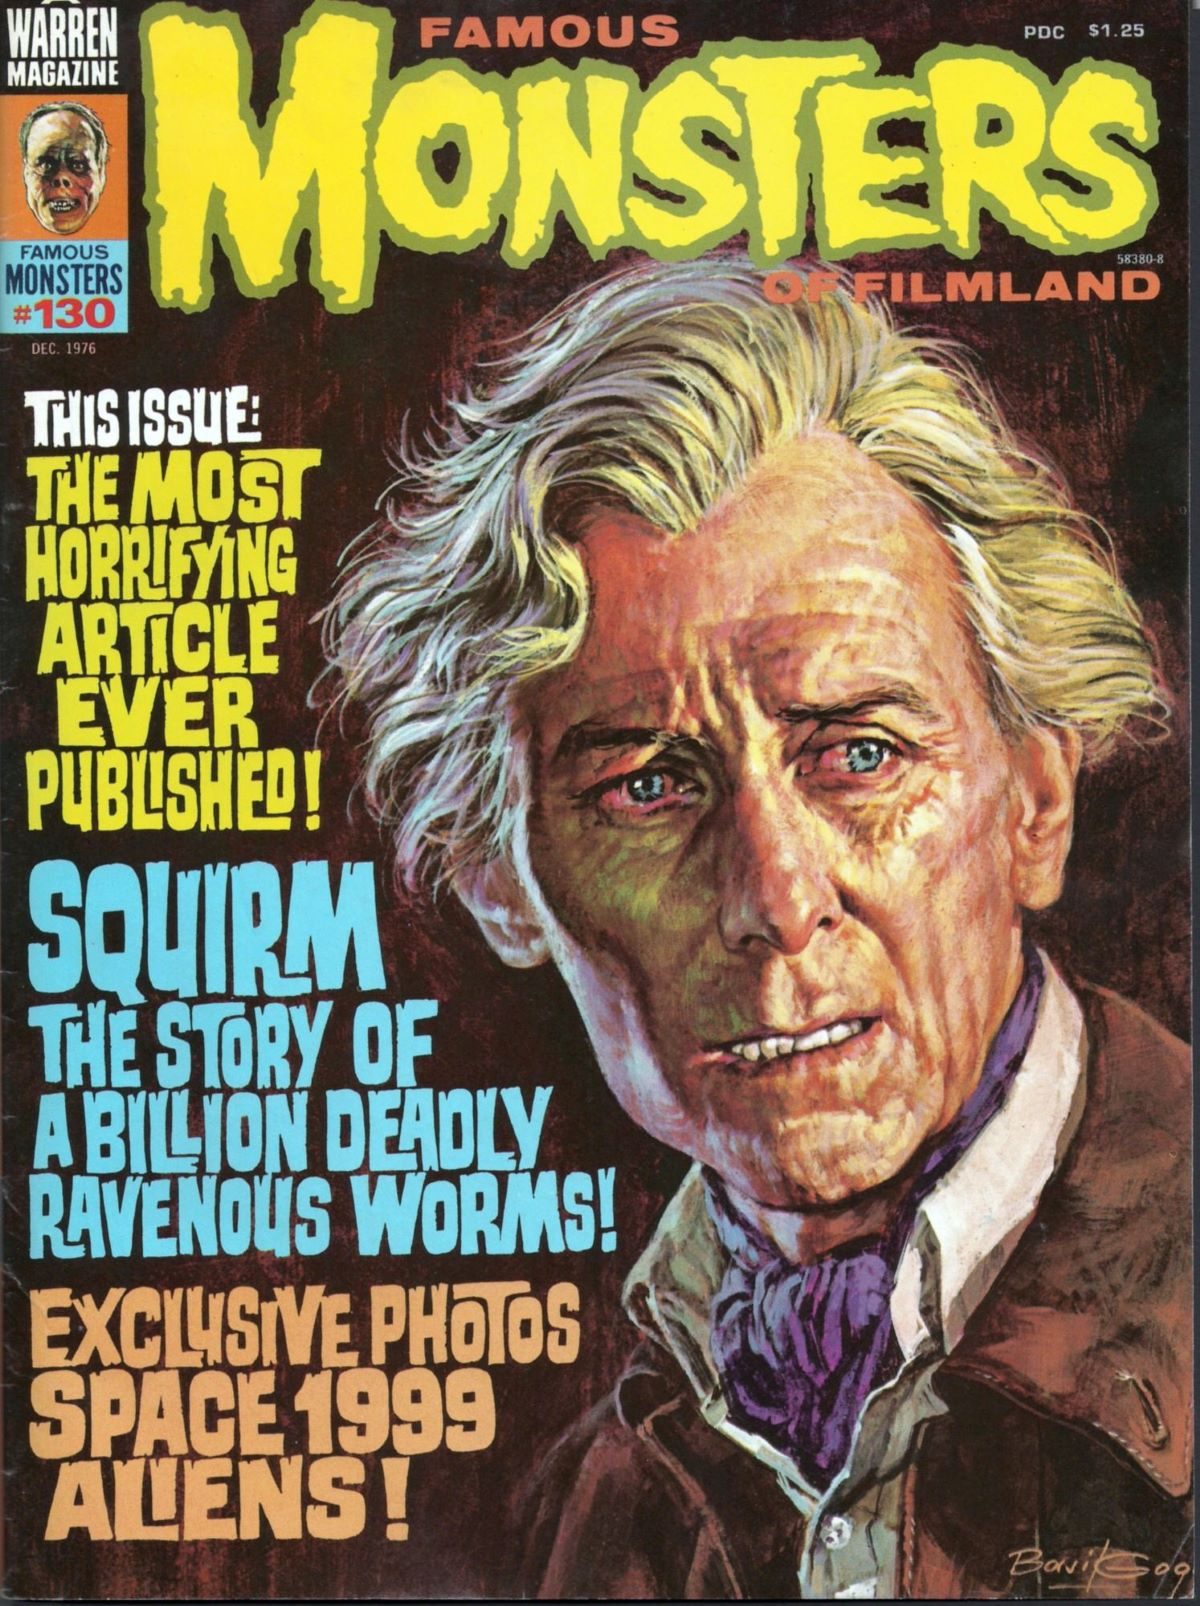 Famous Monsters of Filmland, magazine, horror films, Peter Cushing